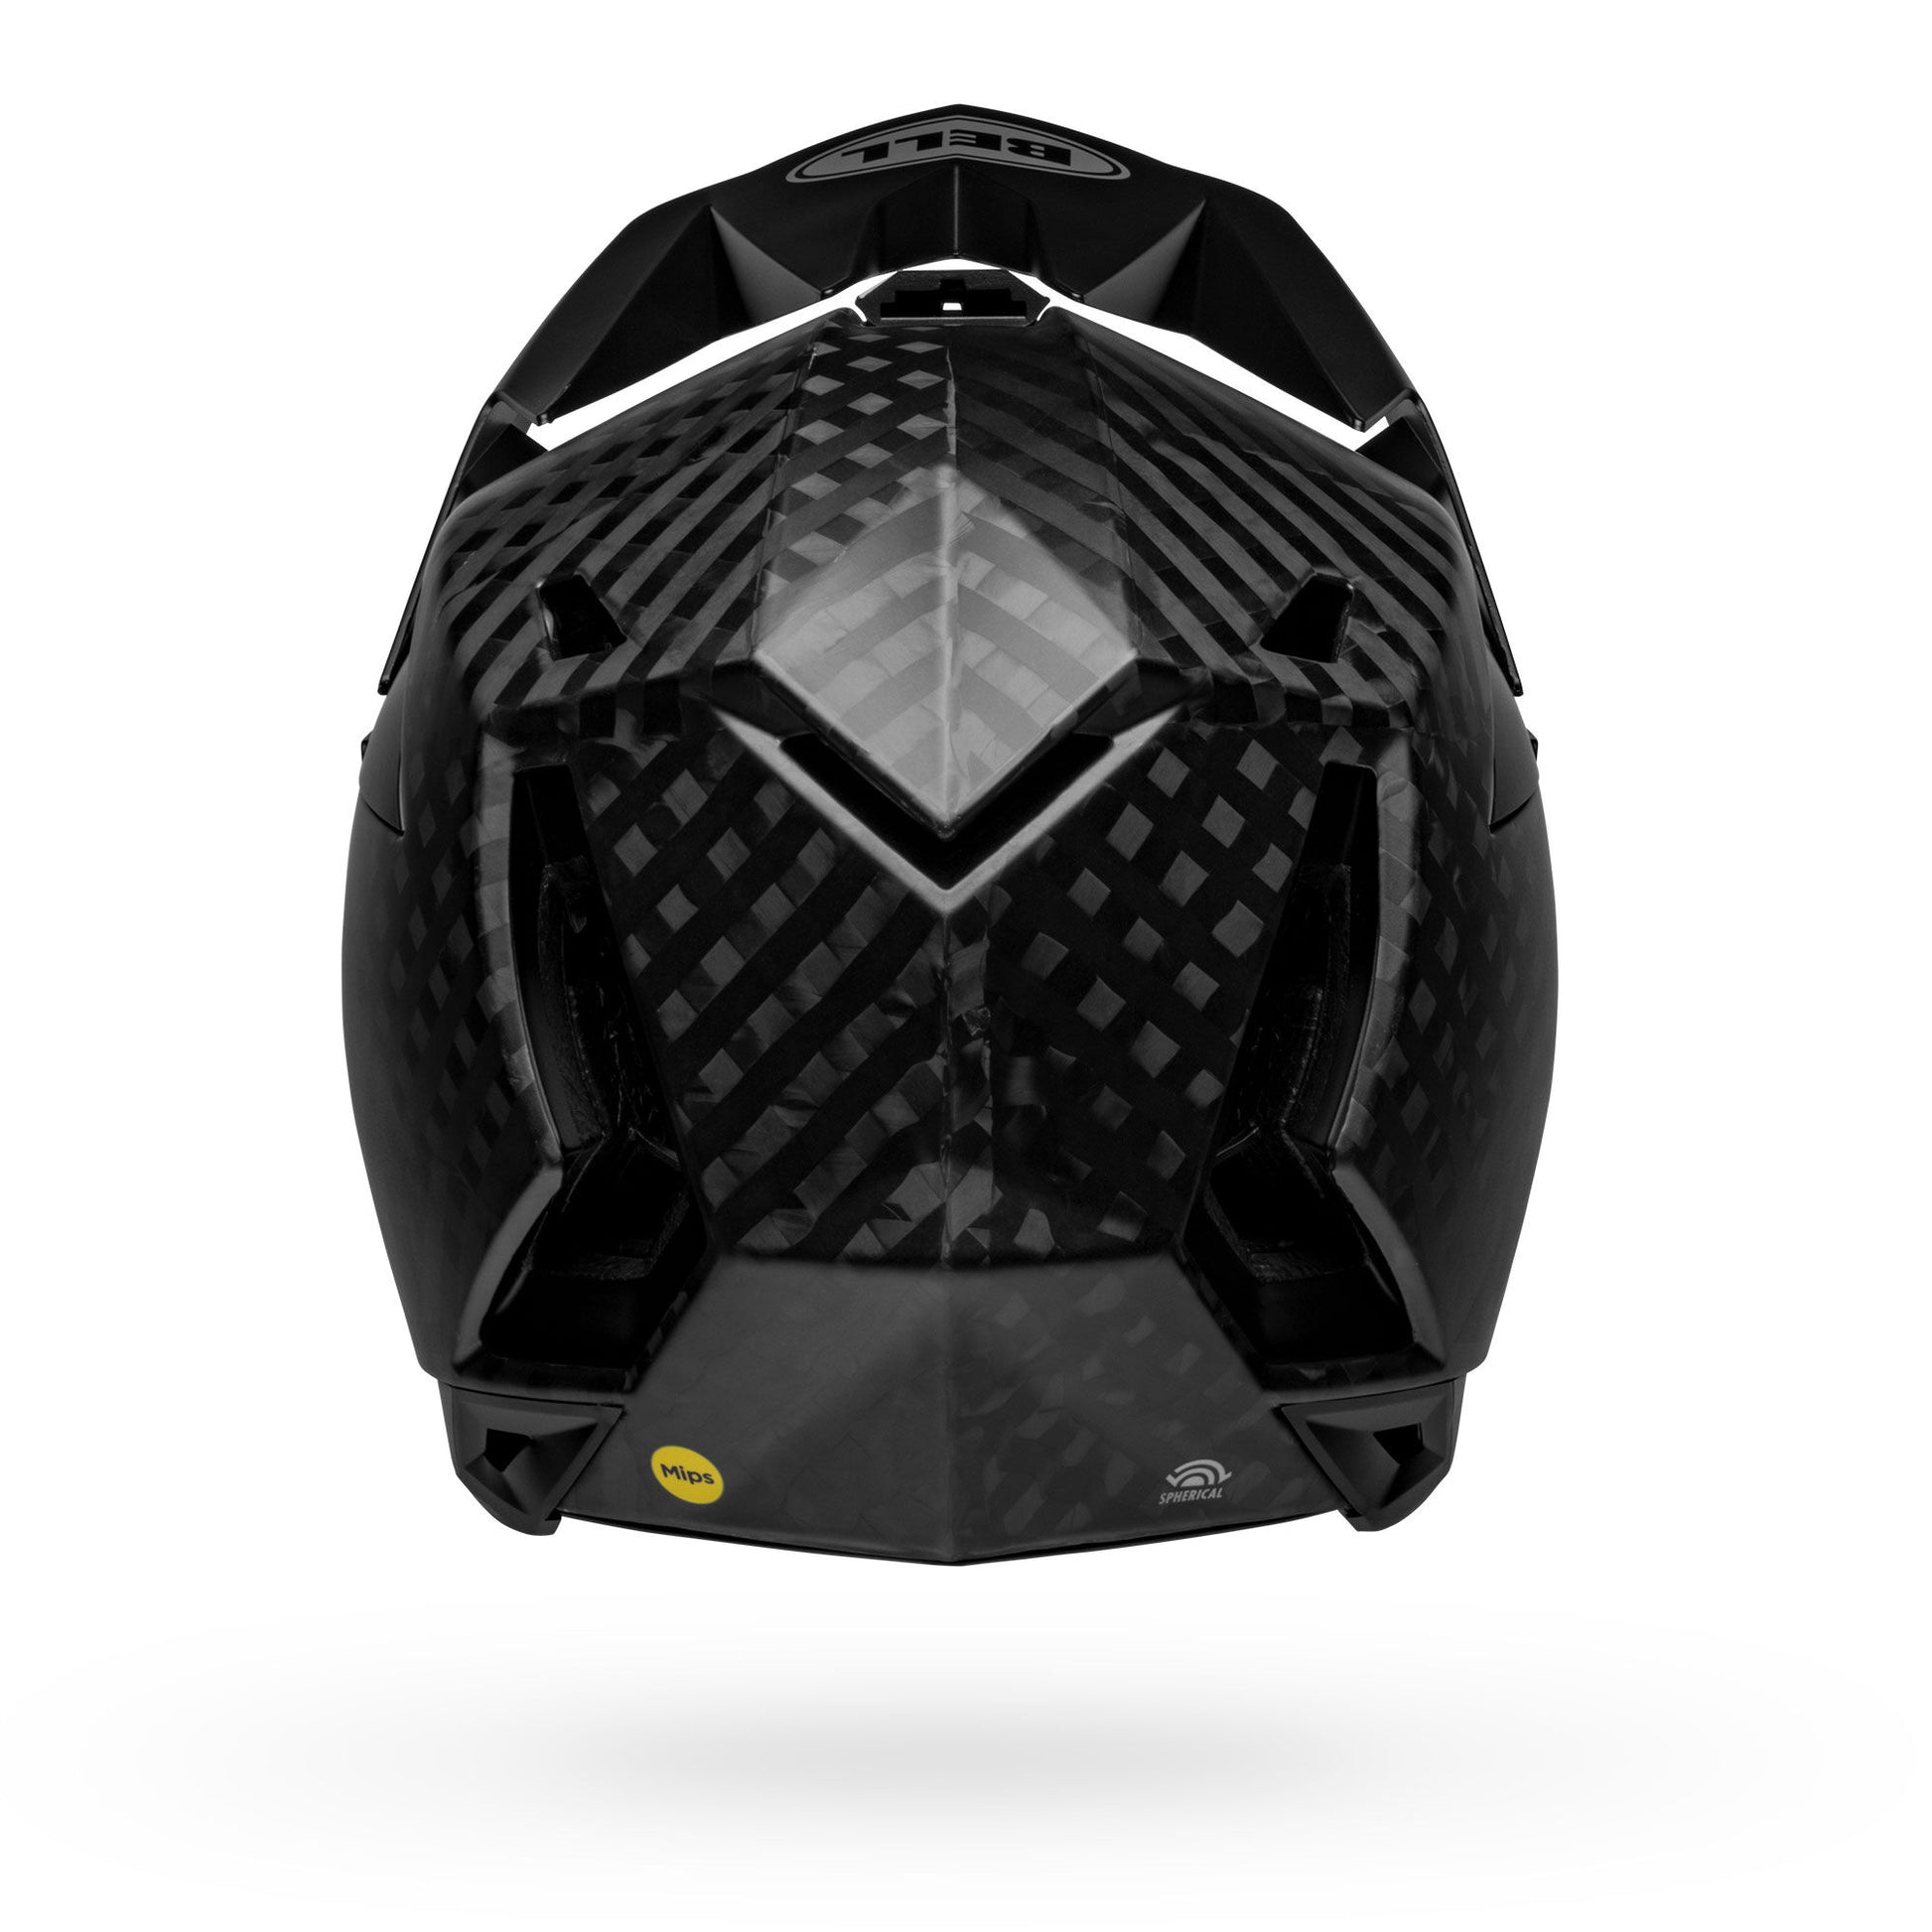 Bell Full-10 Spherical Helmet Matte Black Bike Helmets